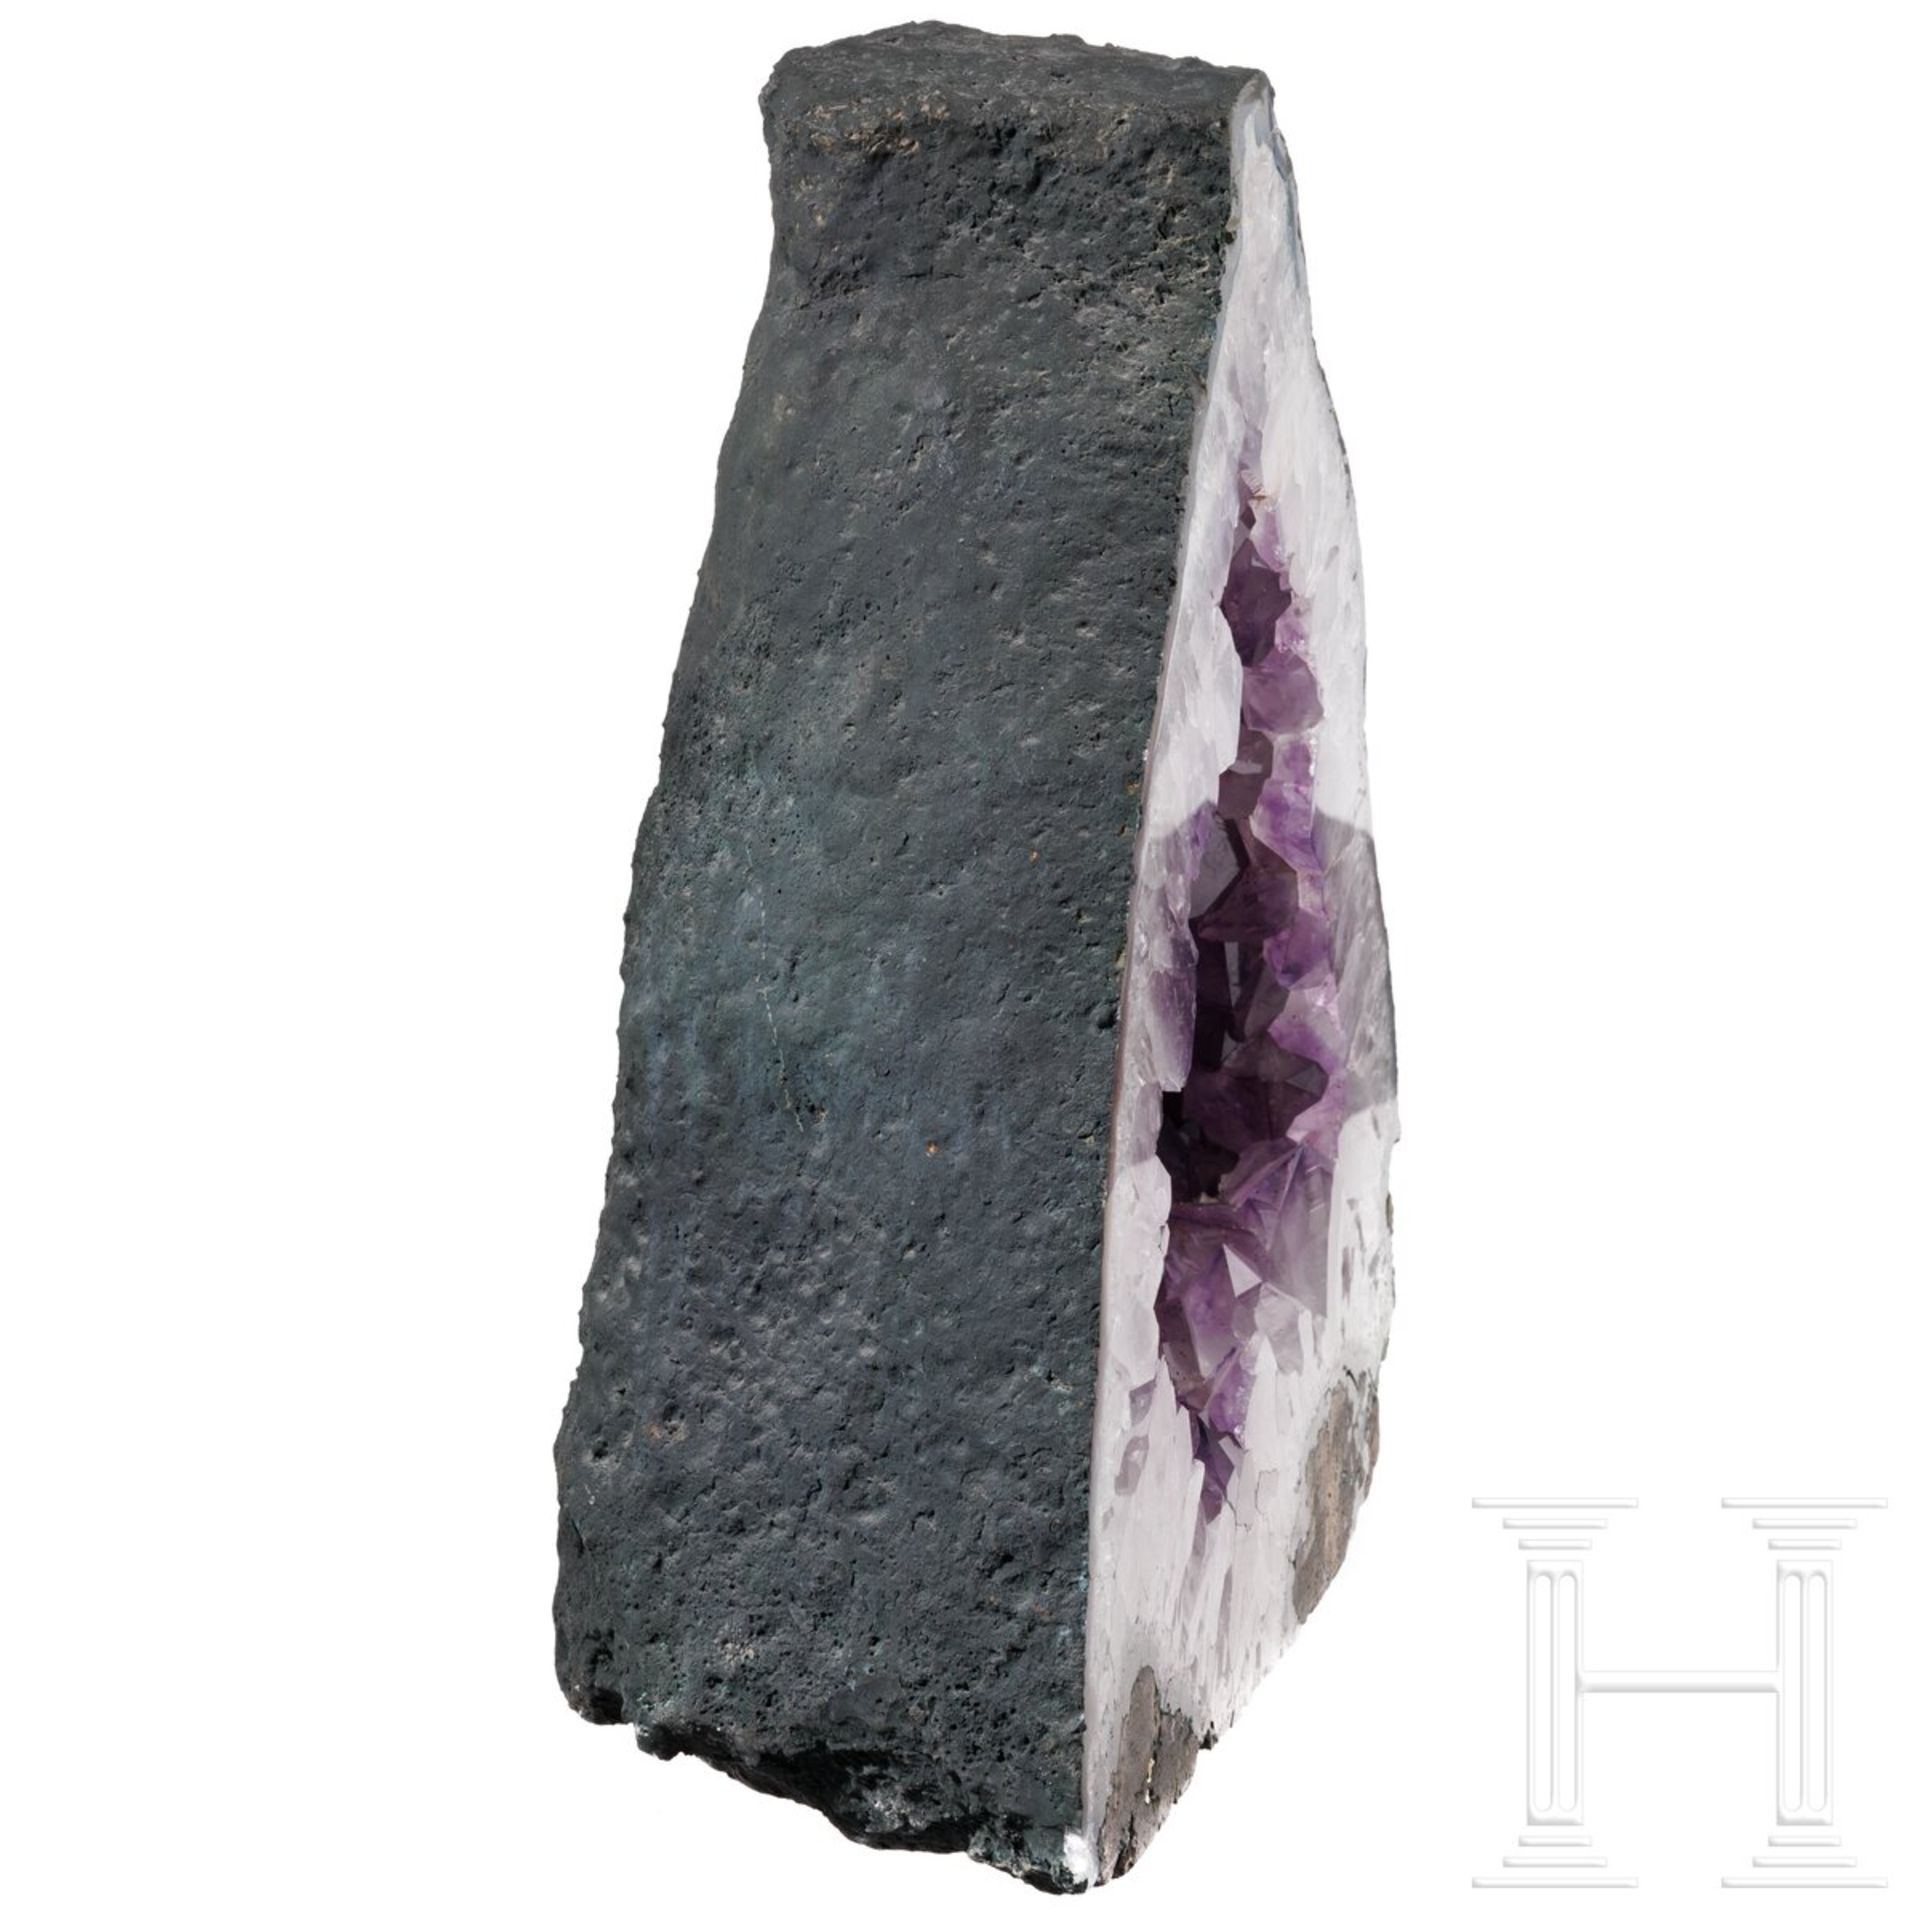 Große Amethyst-Druse (Geode) - Bild 4 aus 5